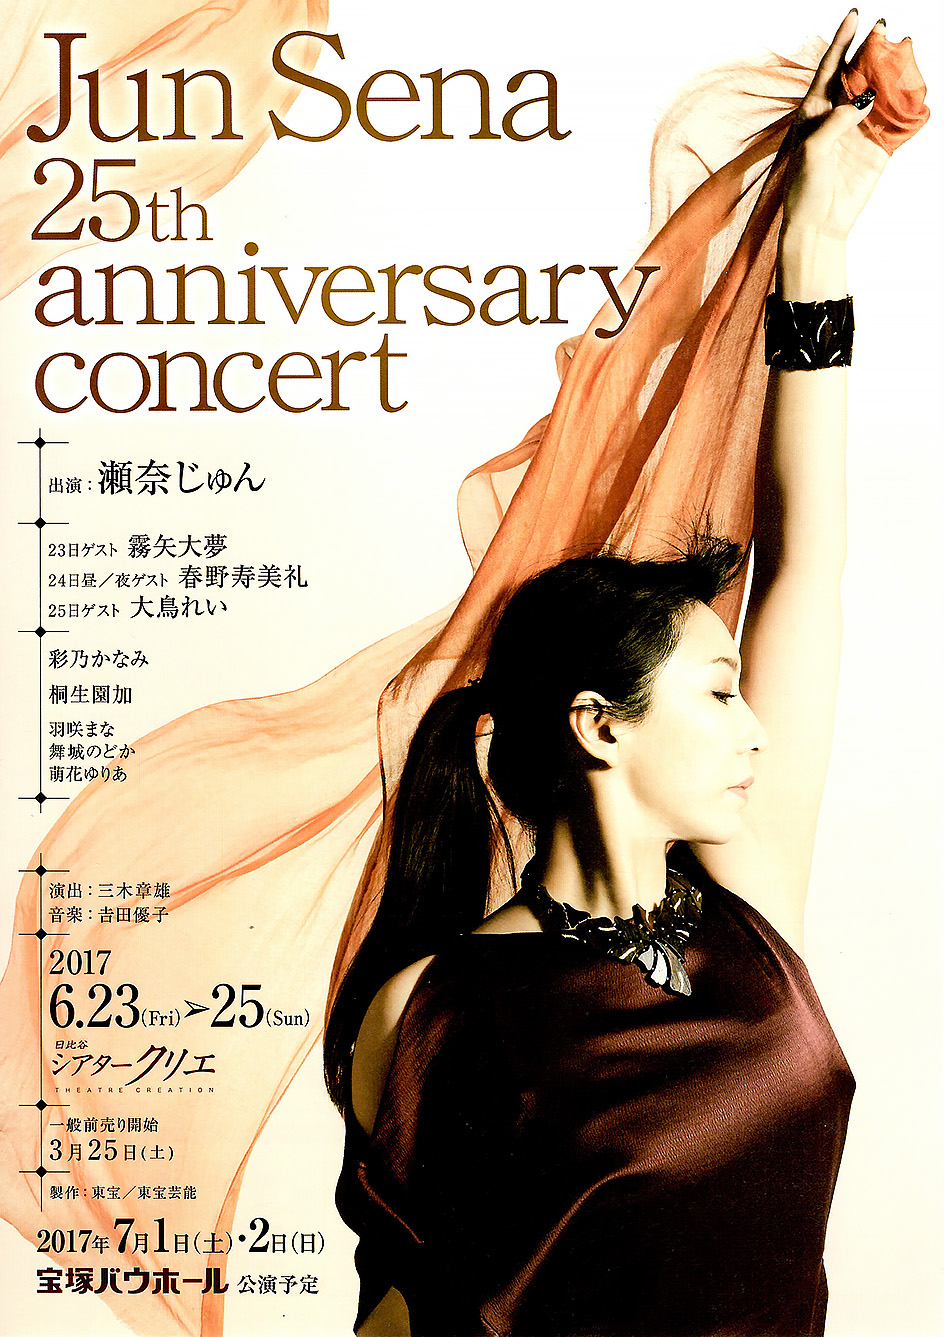 Jun Sena 25th anniversary concert